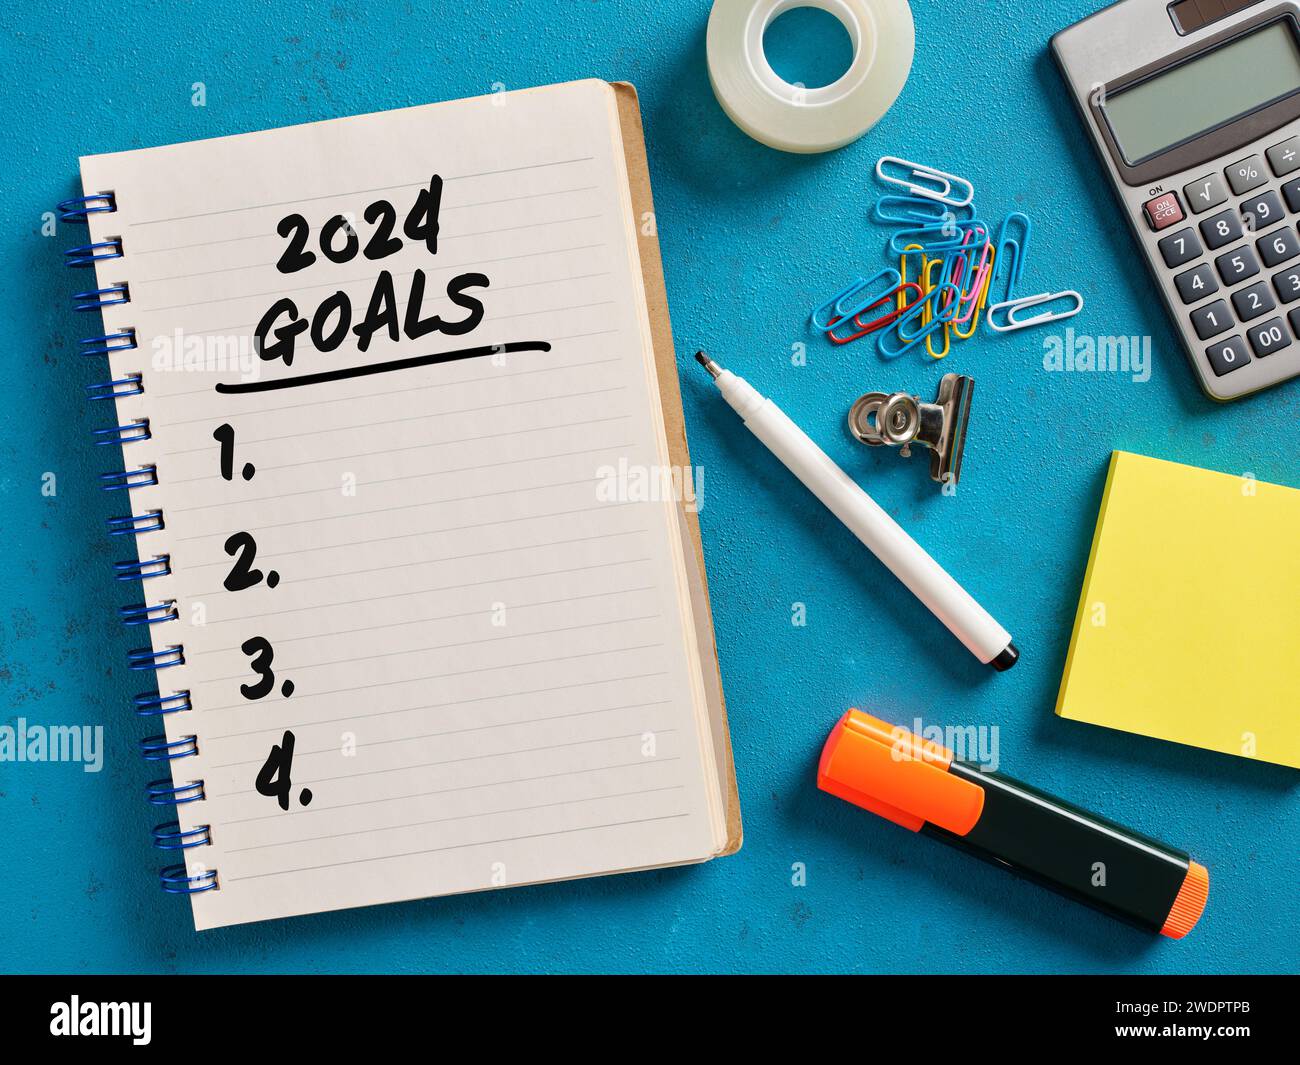 2024 liste de buts manuscrite sur un cahier. Concept de stratégie commerciale, de planification et de réalisation des objectifs. Banque D'Images